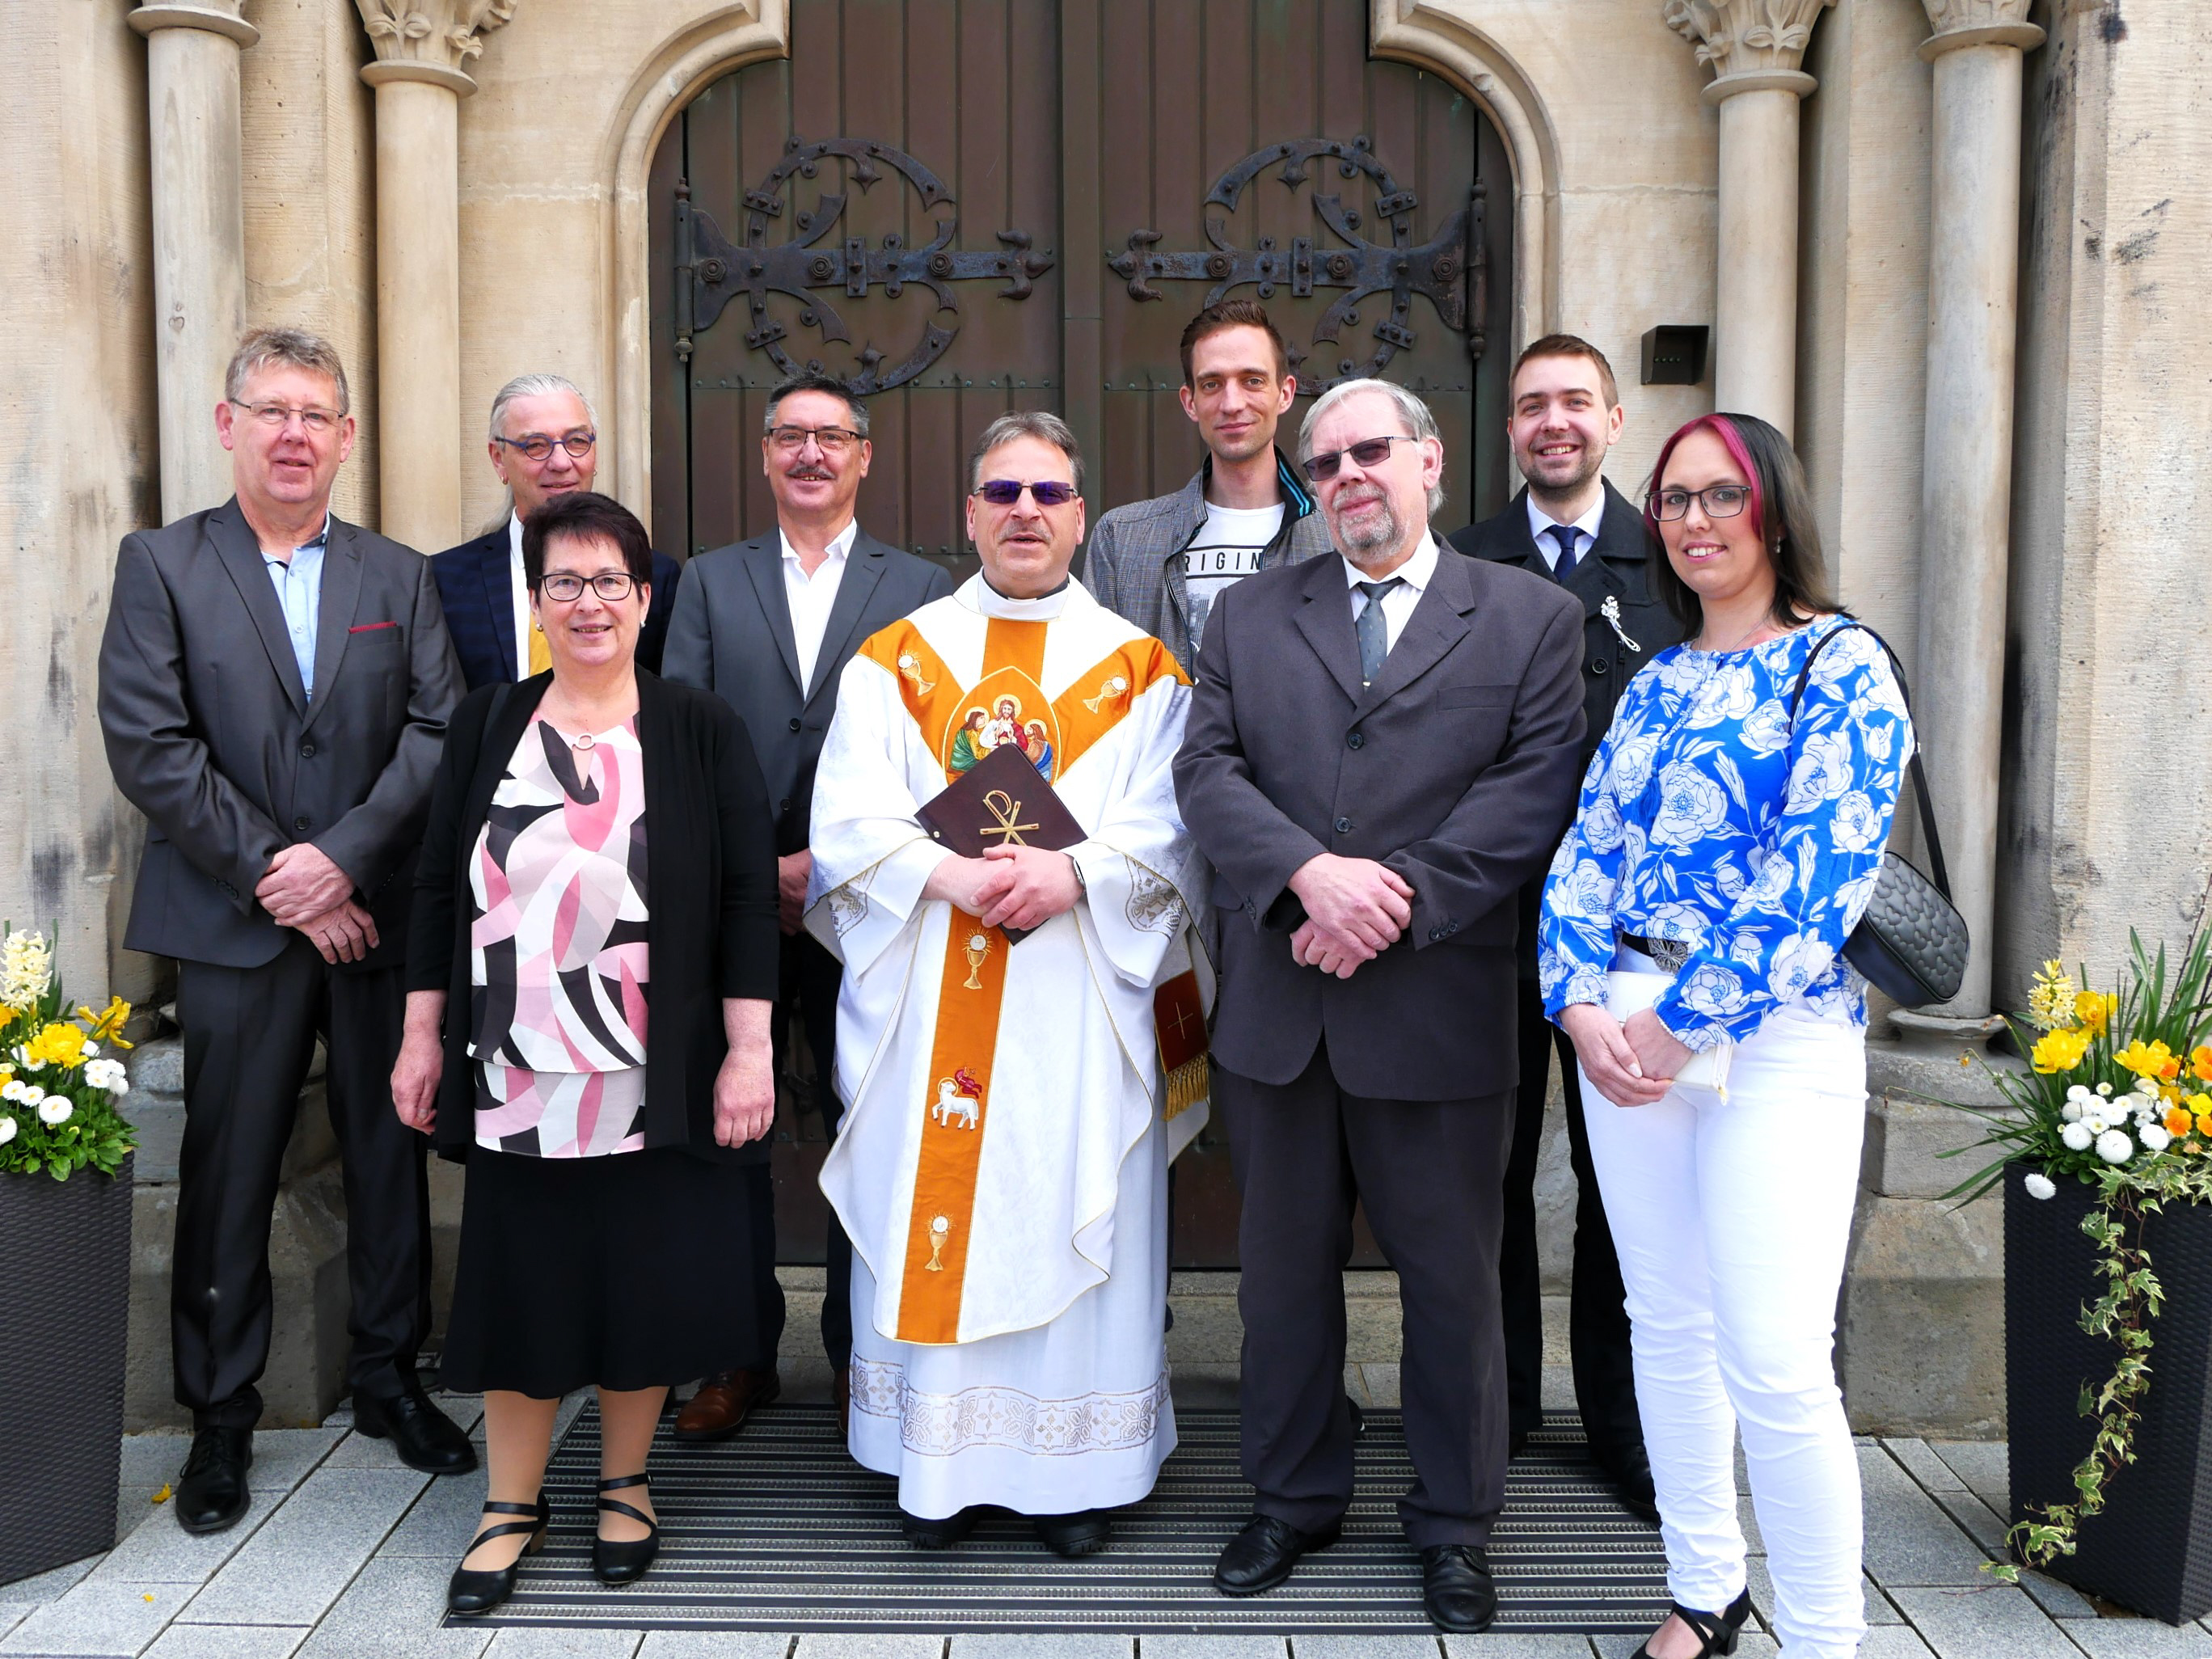 Zusammen mit Pfarrer Richard Reis feierten die Jubilare ihr 50jähriges sowie ihr 25jähriges Kommunionjubiläum.